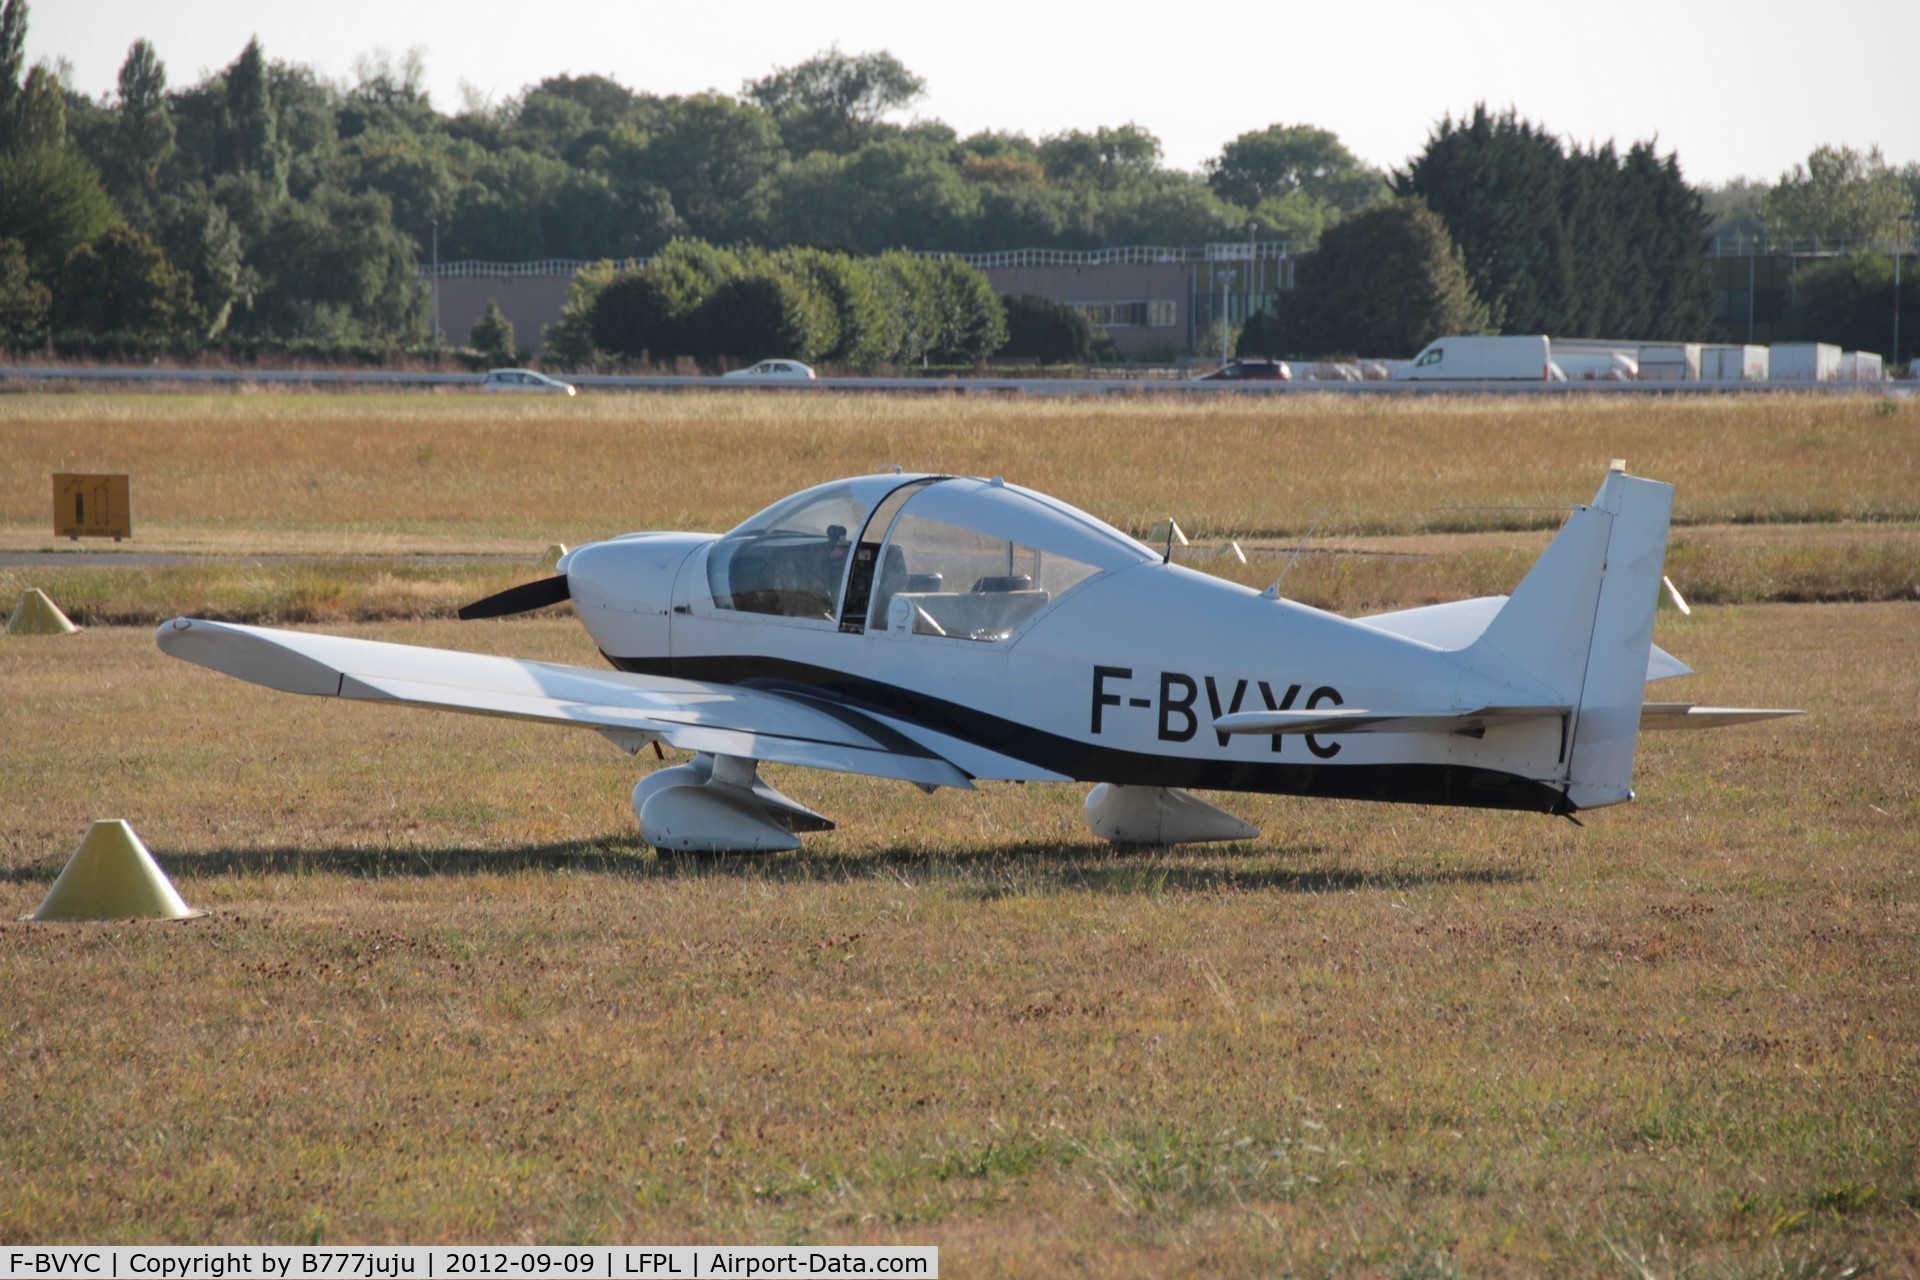 F-BVYC, Robin HR-200-100 Club C/N 51, with new peint